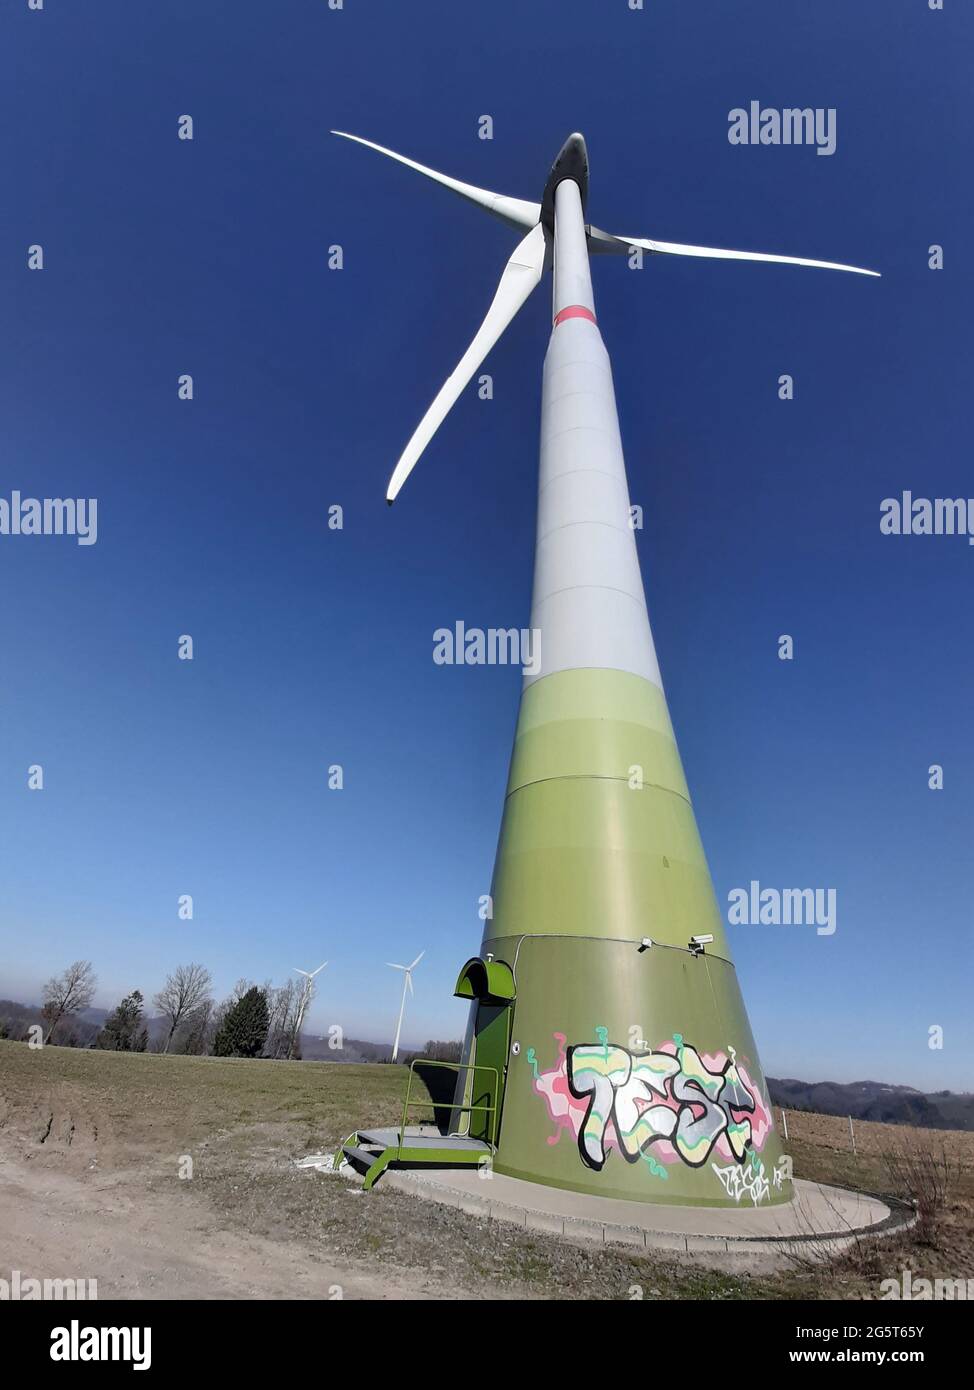 Ruota a vento con graffiti, Germania Foto Stock